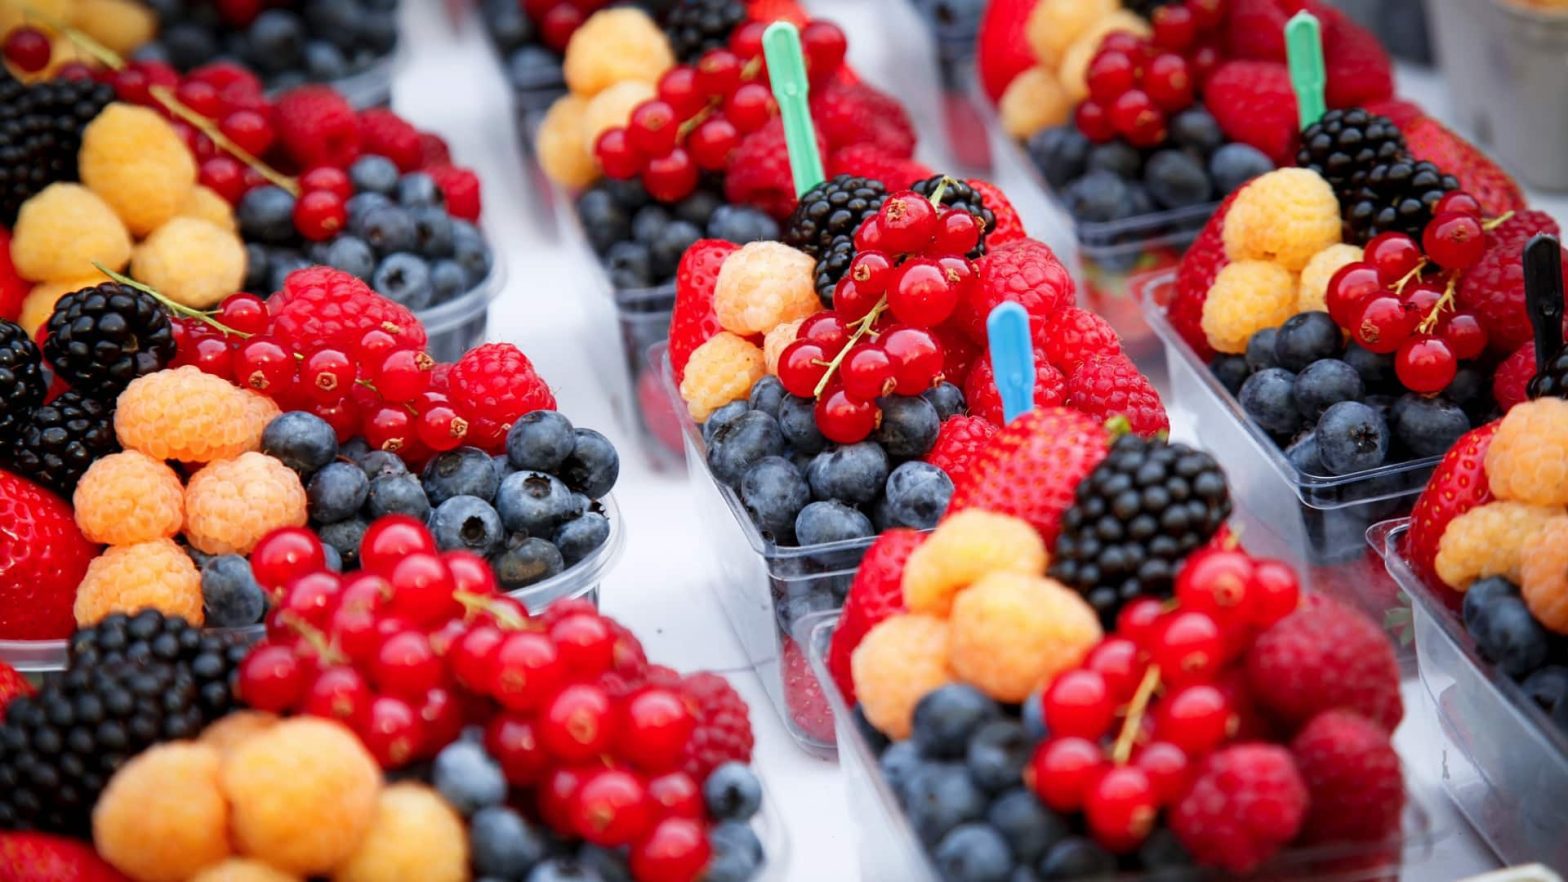 Combien de portions de fruits peut on manger par jour?